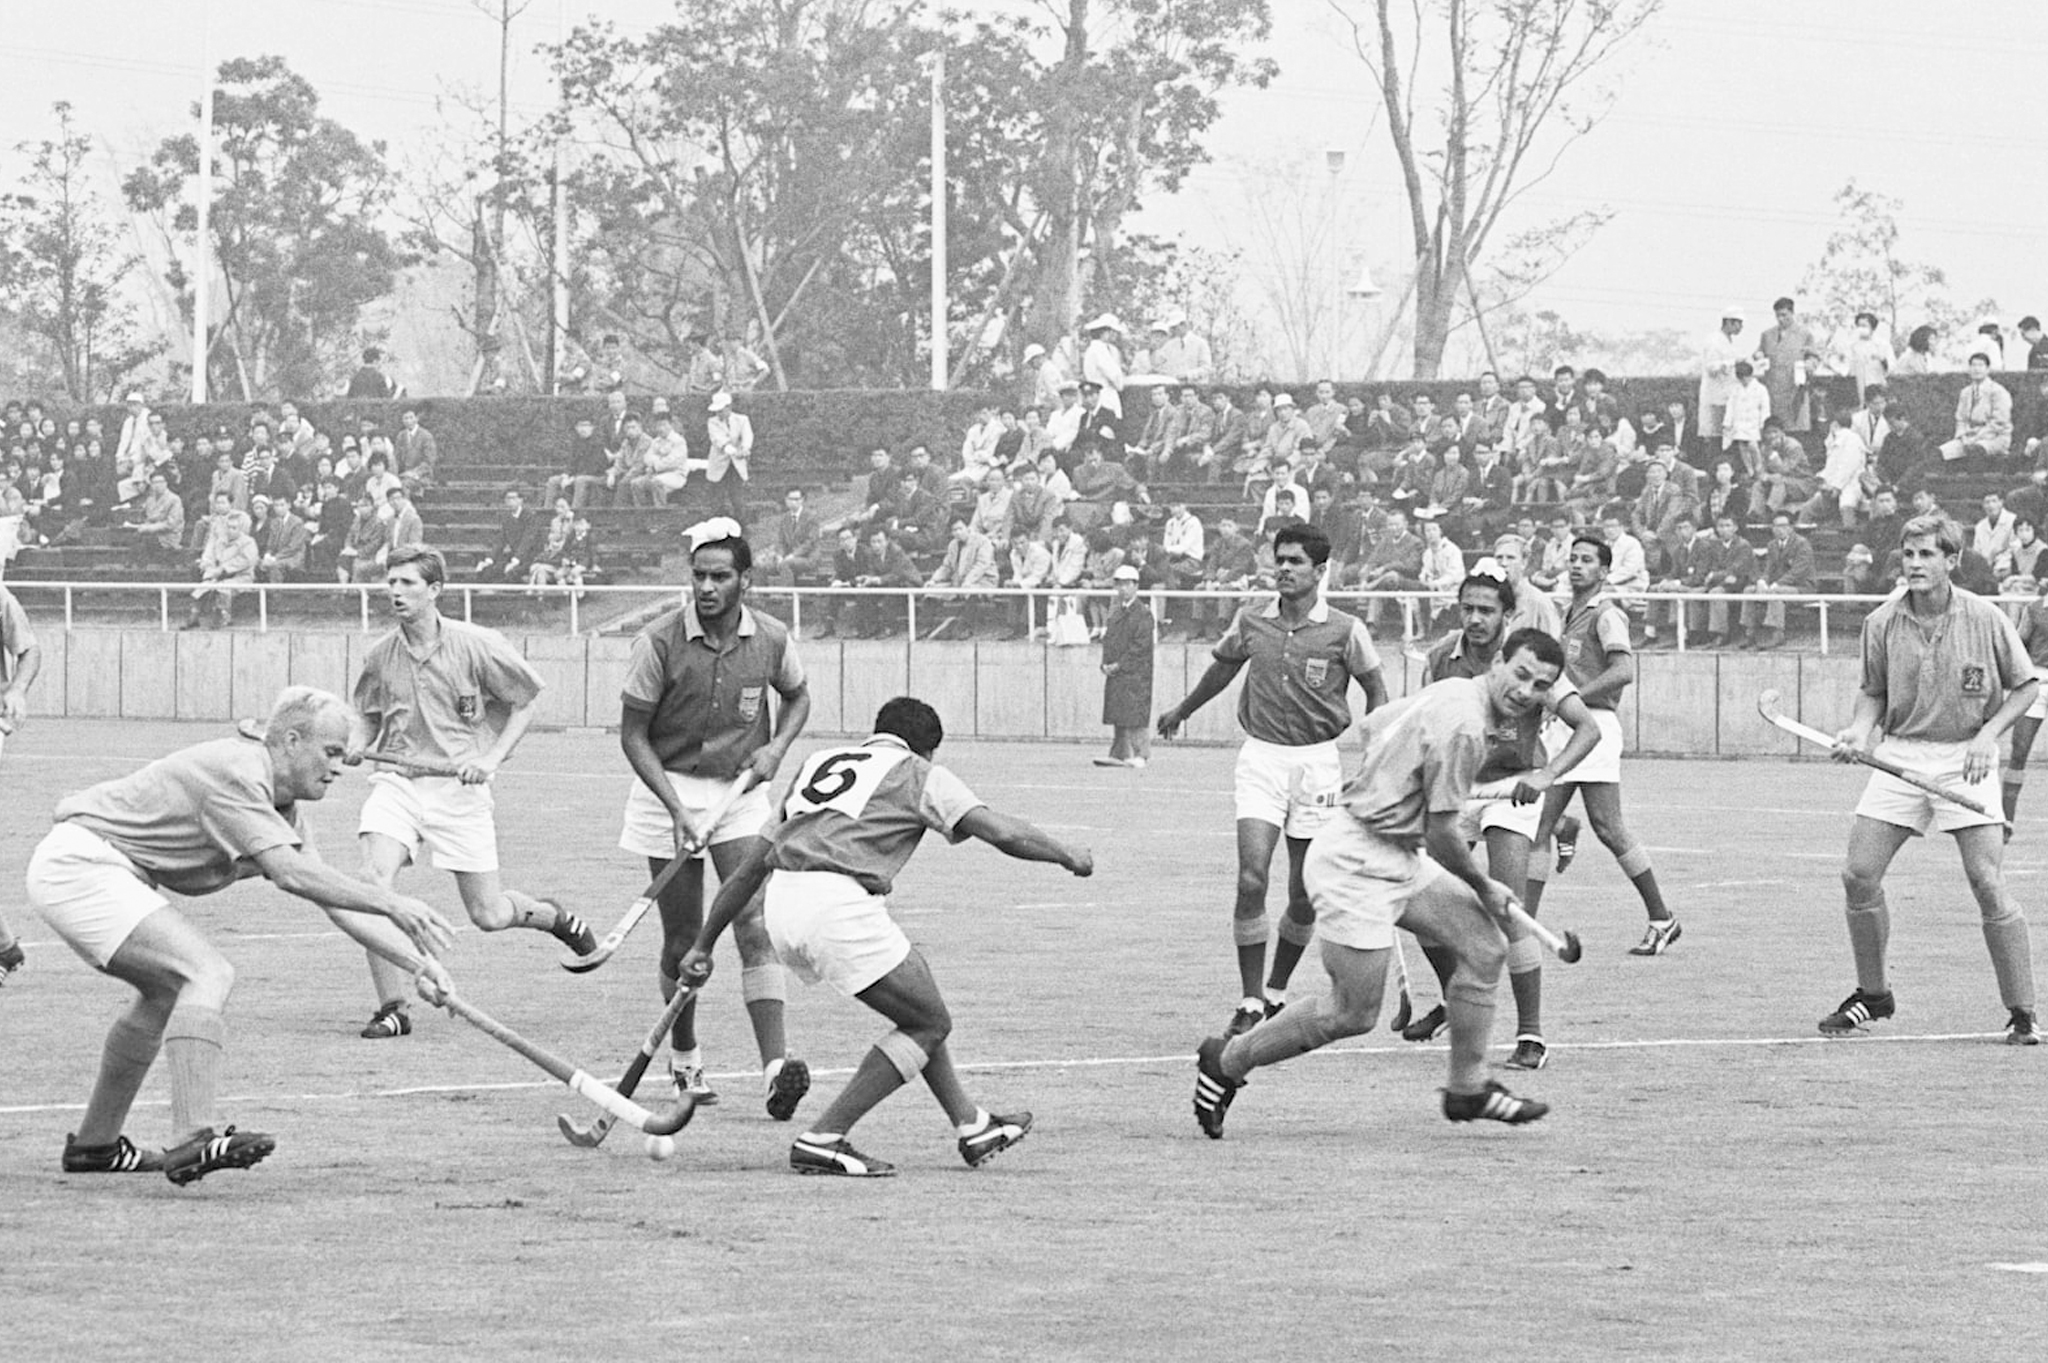 Surto História: a rivalidade entre Índia e Paquistão evidenciada no hóquei  sobre grama - Surto Olímpico